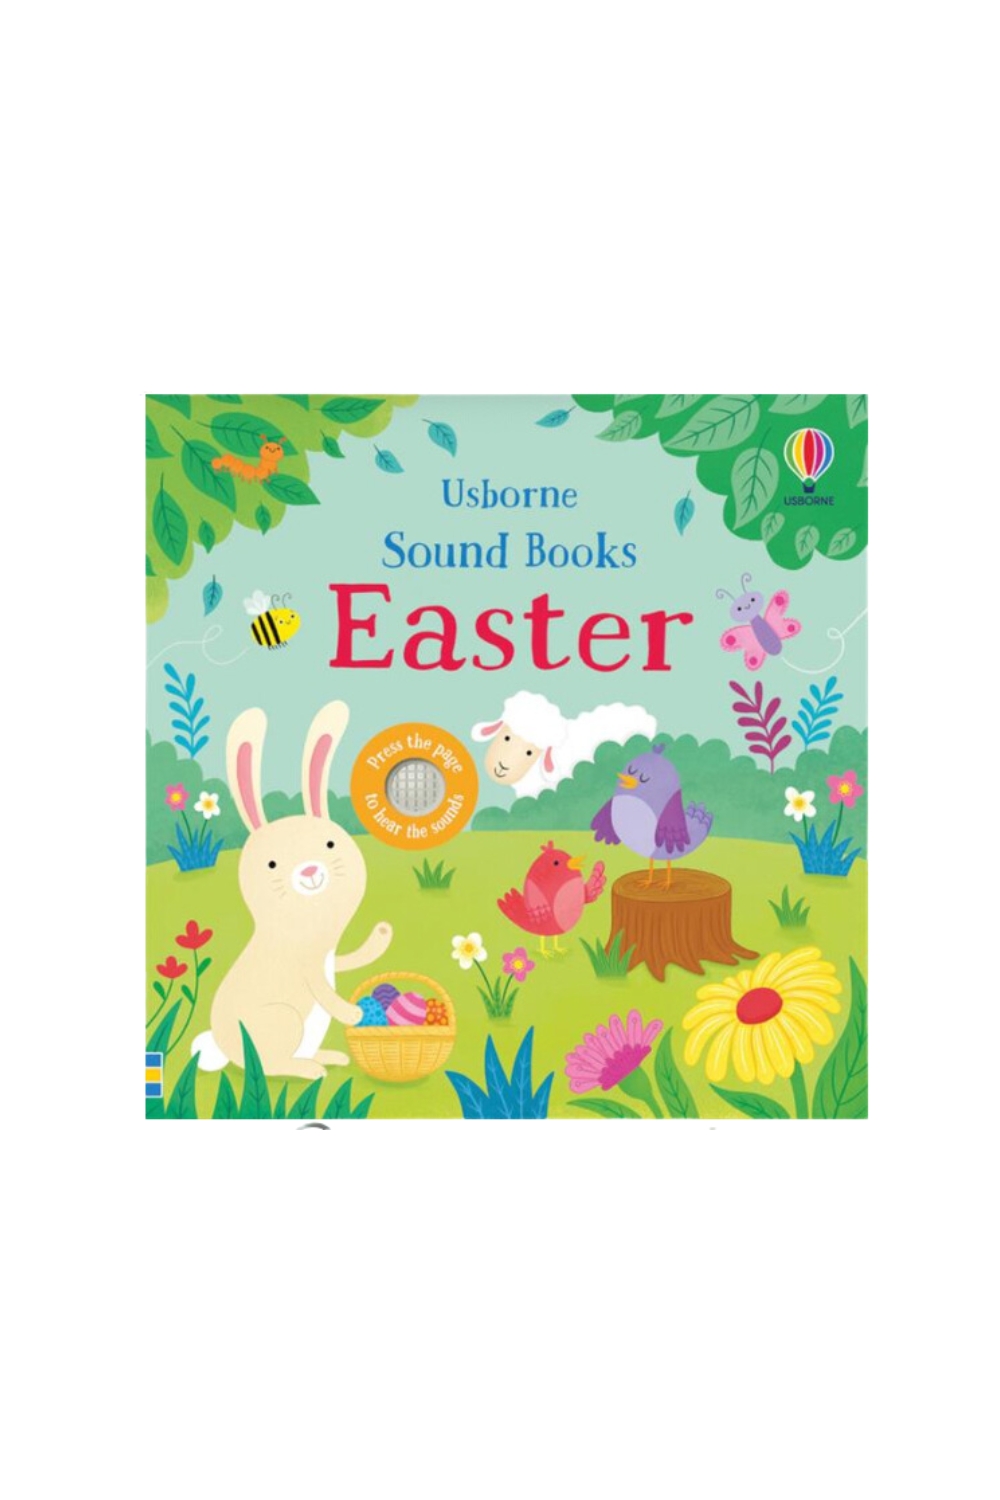 Easter basket ideas for kids, kids Easter basket, Easter basket ideas for toddler, Easter basket ideas for babies